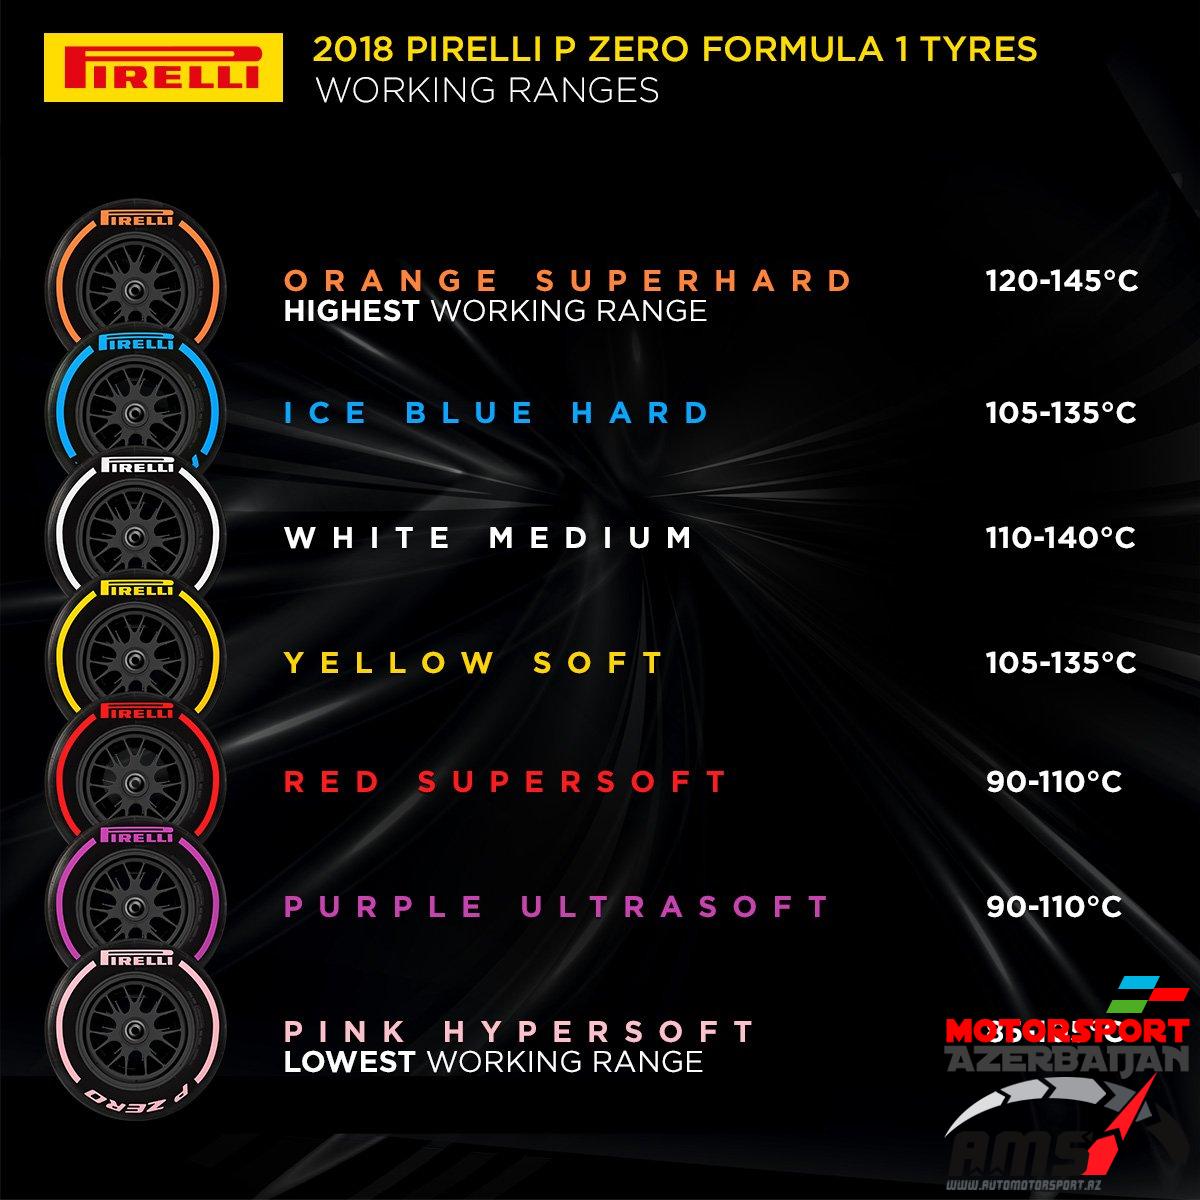 Pirelli working ranges